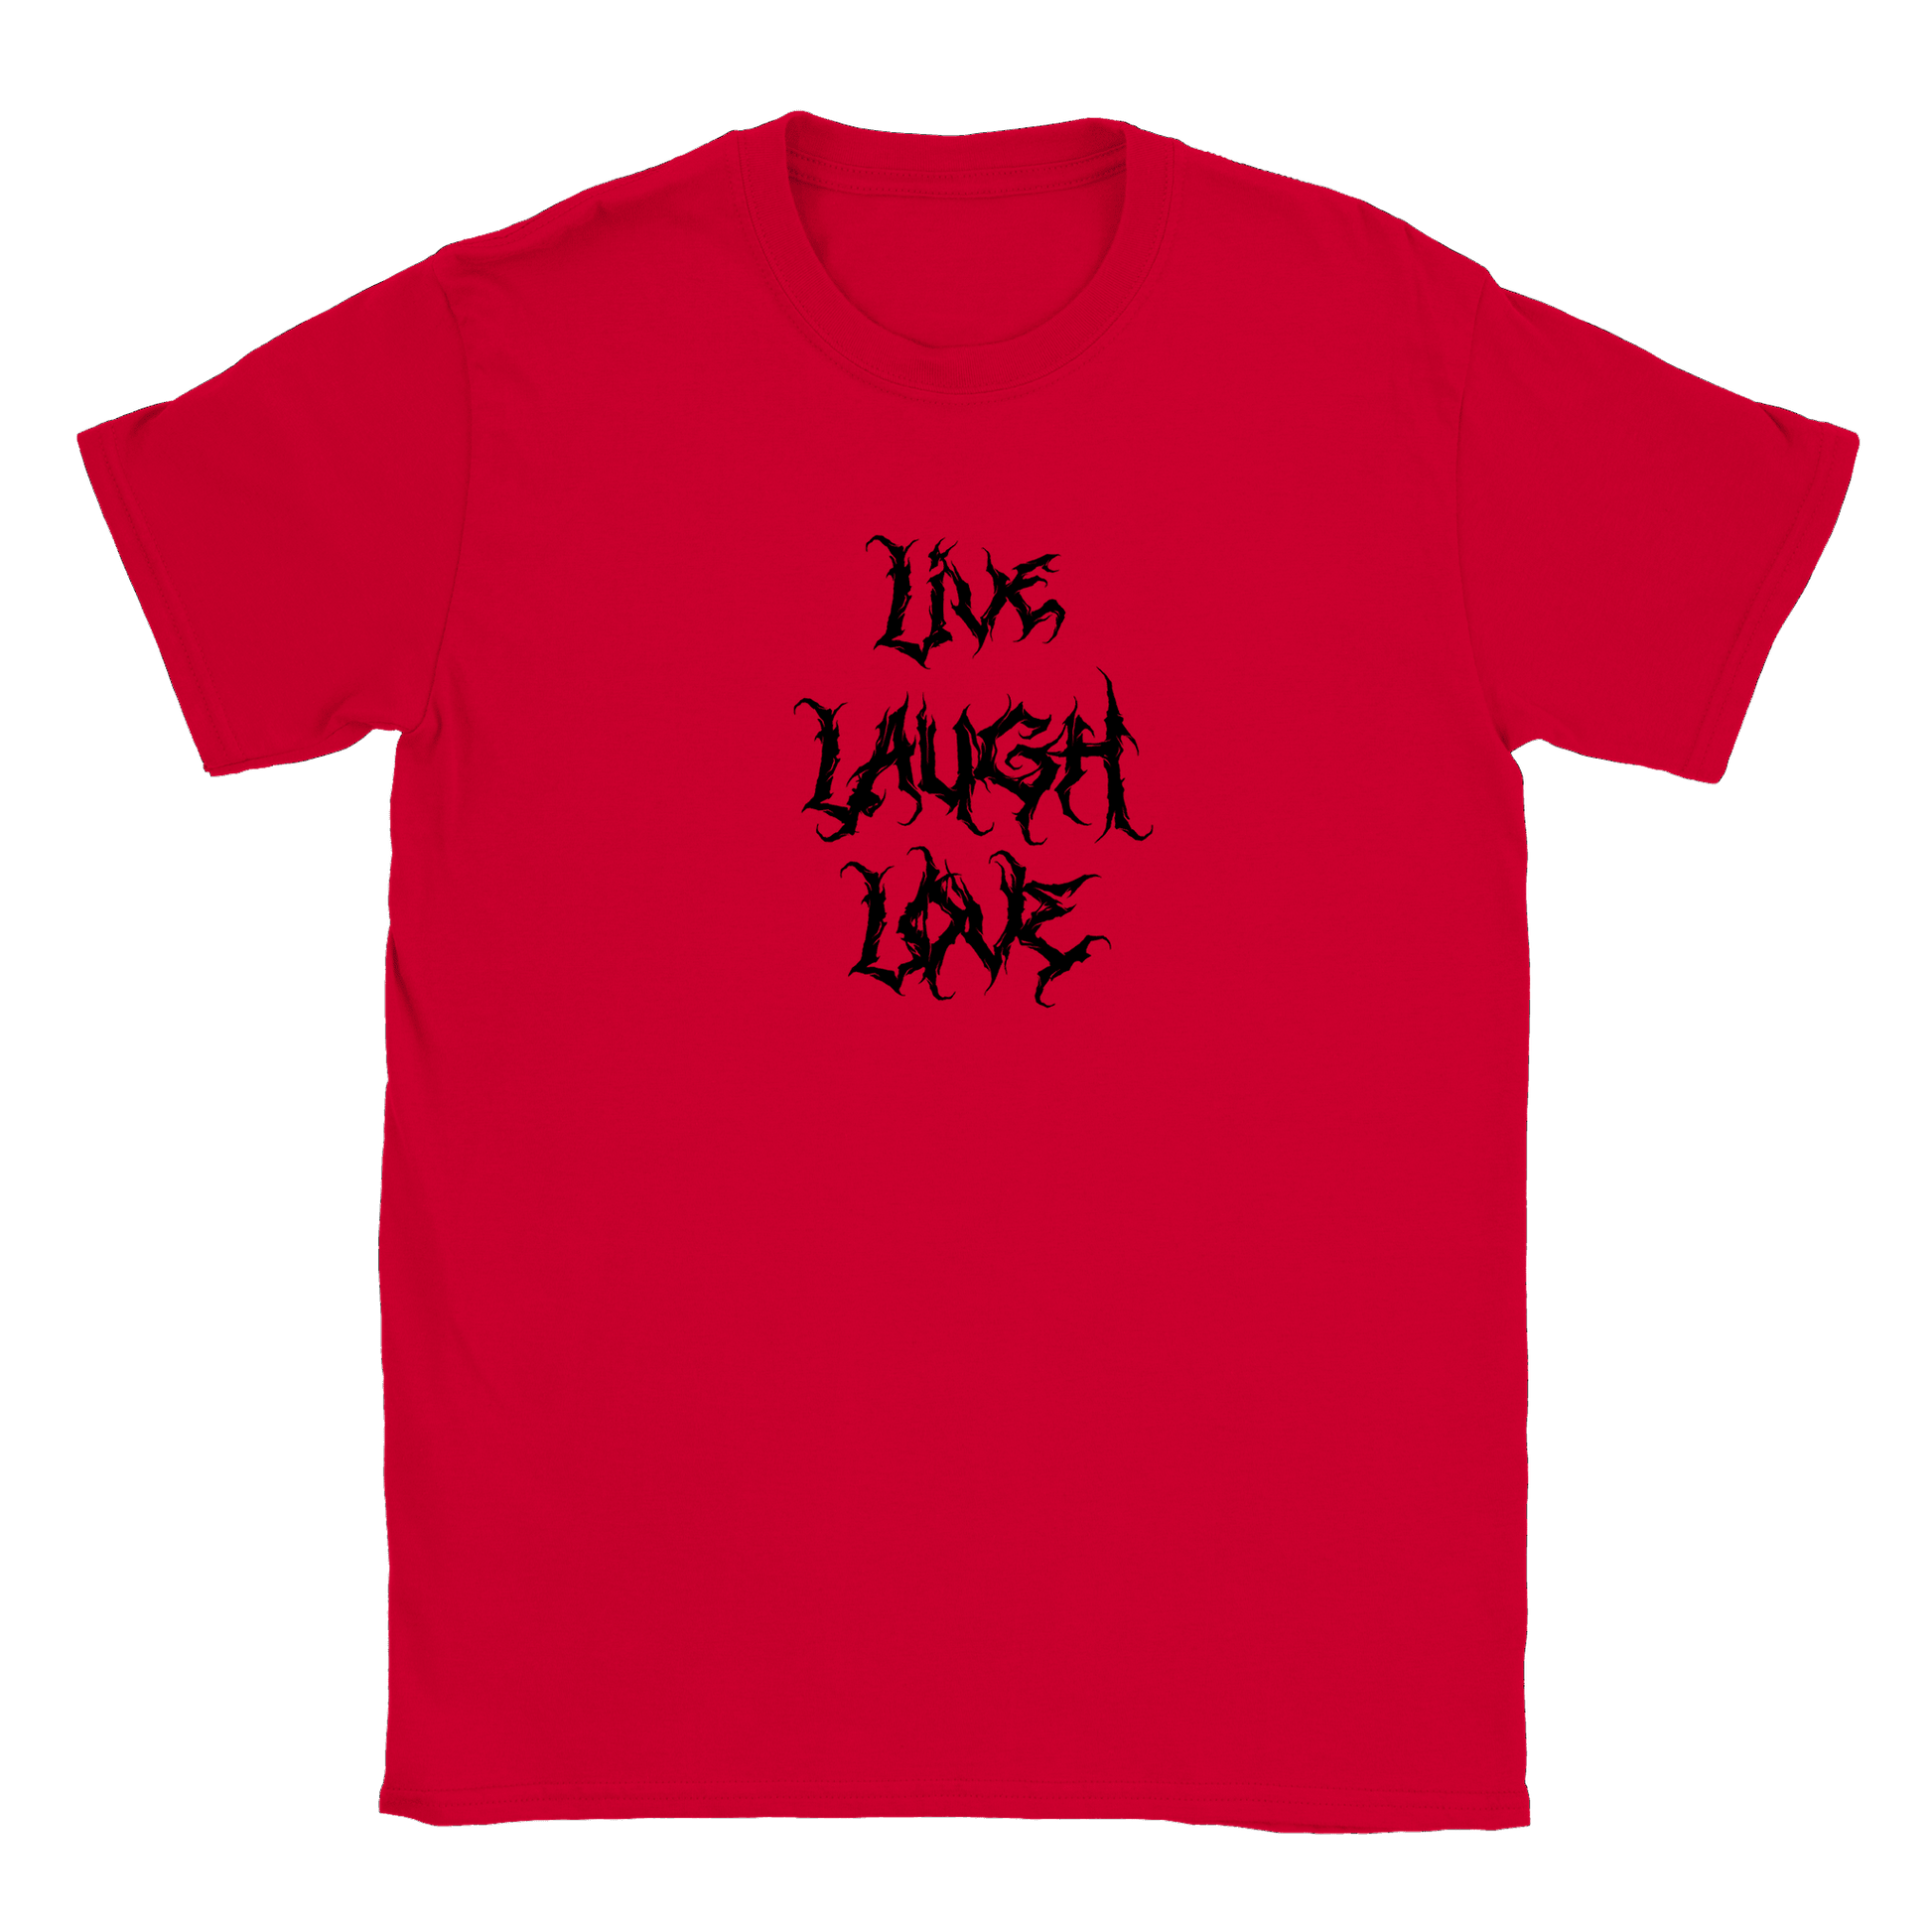 Live Laugh Love - T-shirt Röd